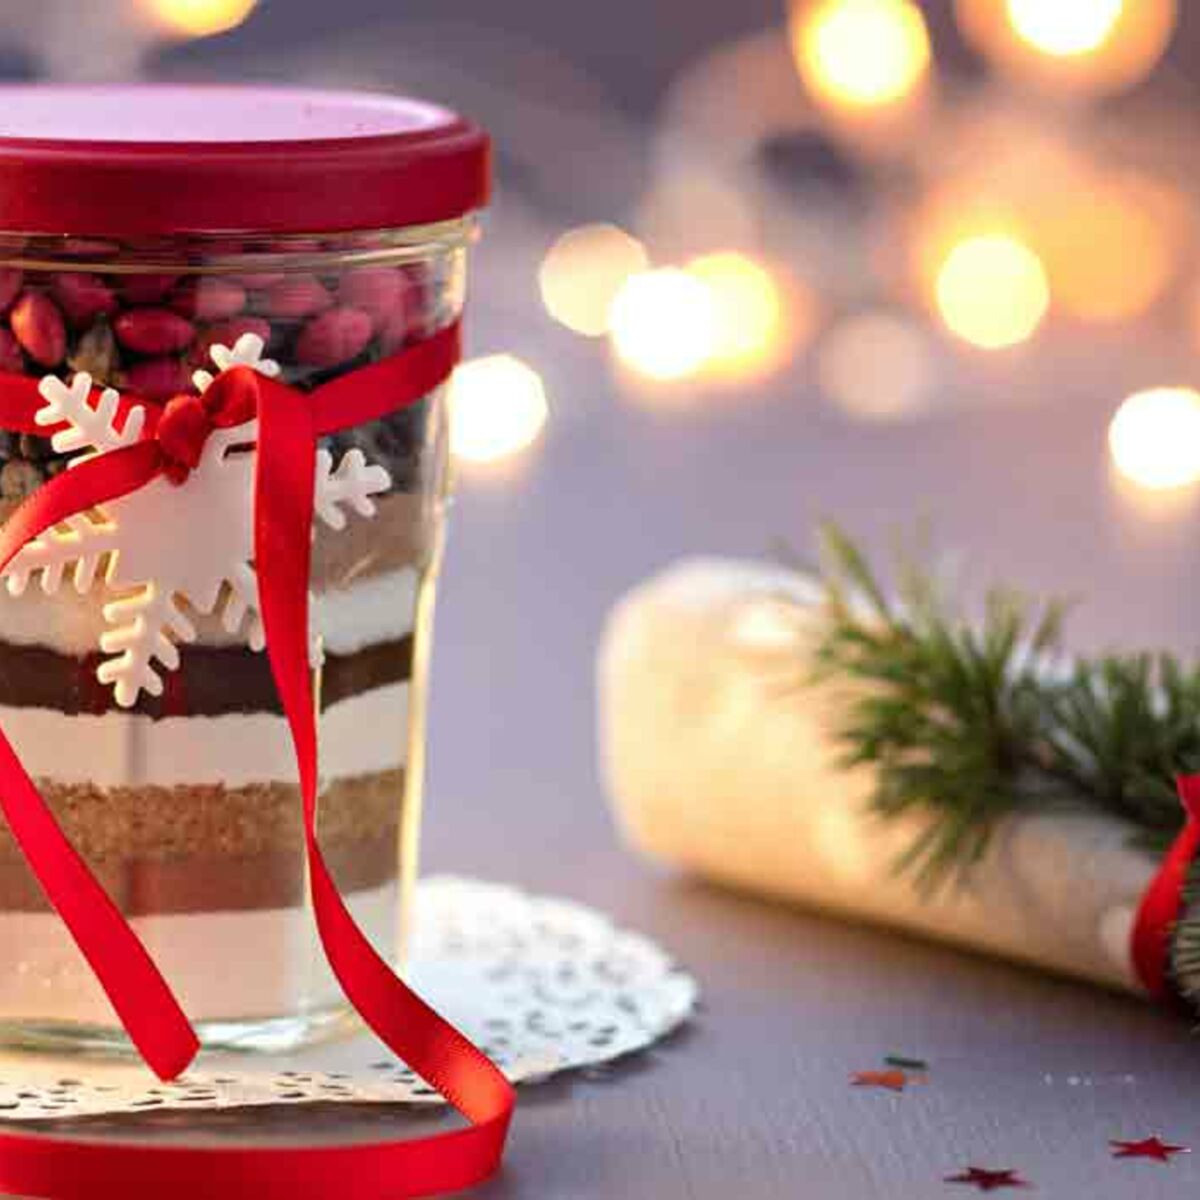 Cookies jar, kit à chocolat chaud, alcools arrangés : nos idées de cadeaux  d'assiettes gourmands à faire pour Noël : Femme Actuelle Le MAG